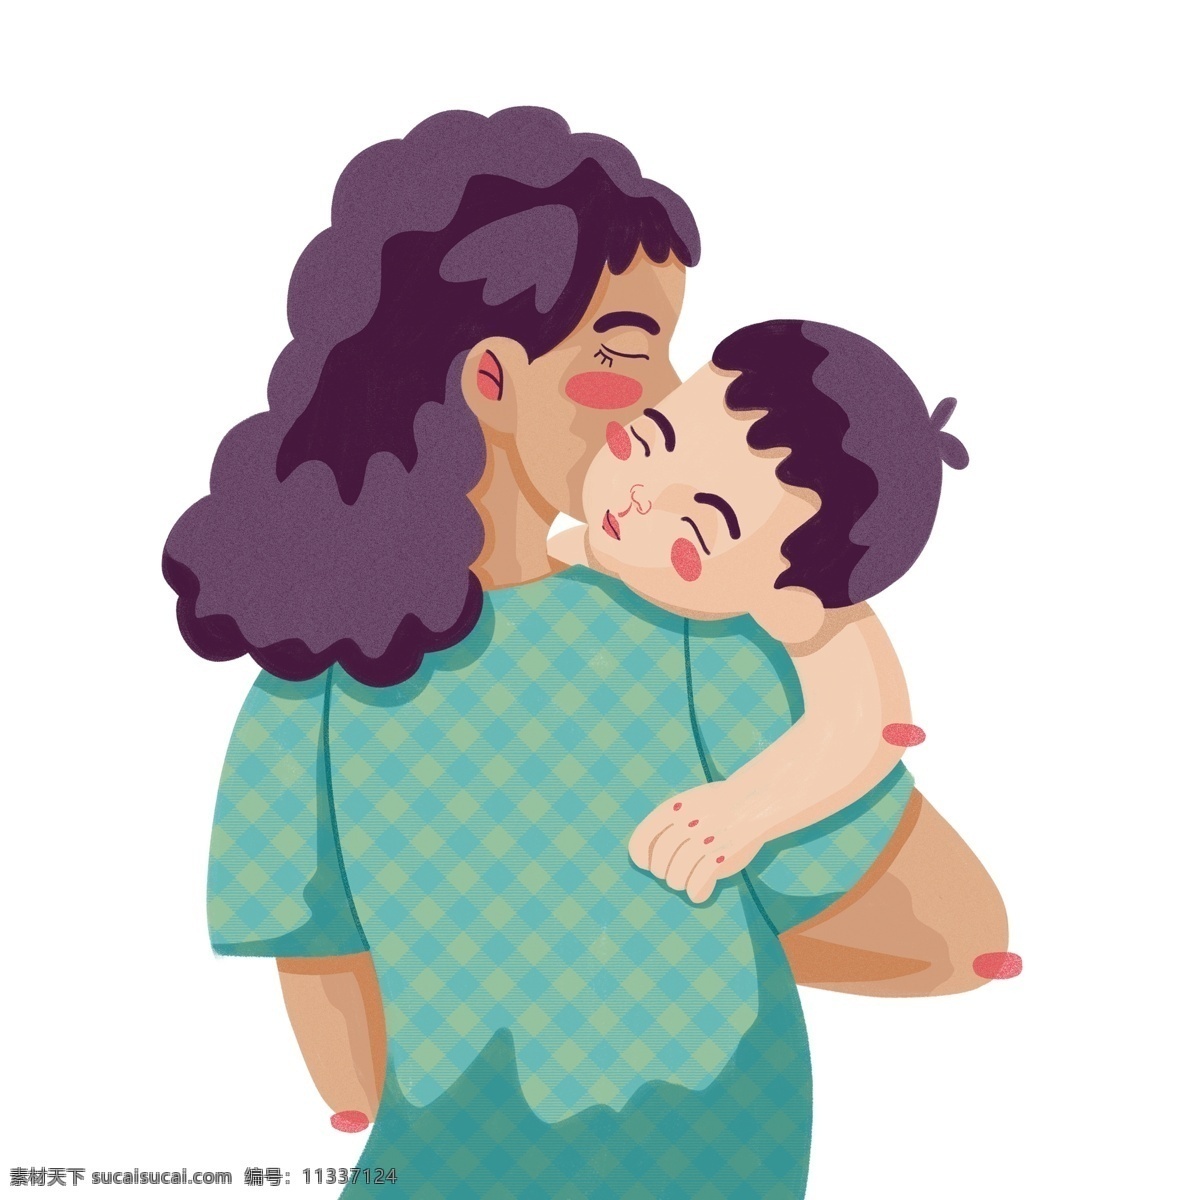 扁平化 母亲节 母子 俩 卡通 创意 母子俩 插画 人物设计 妈妈 宝宝